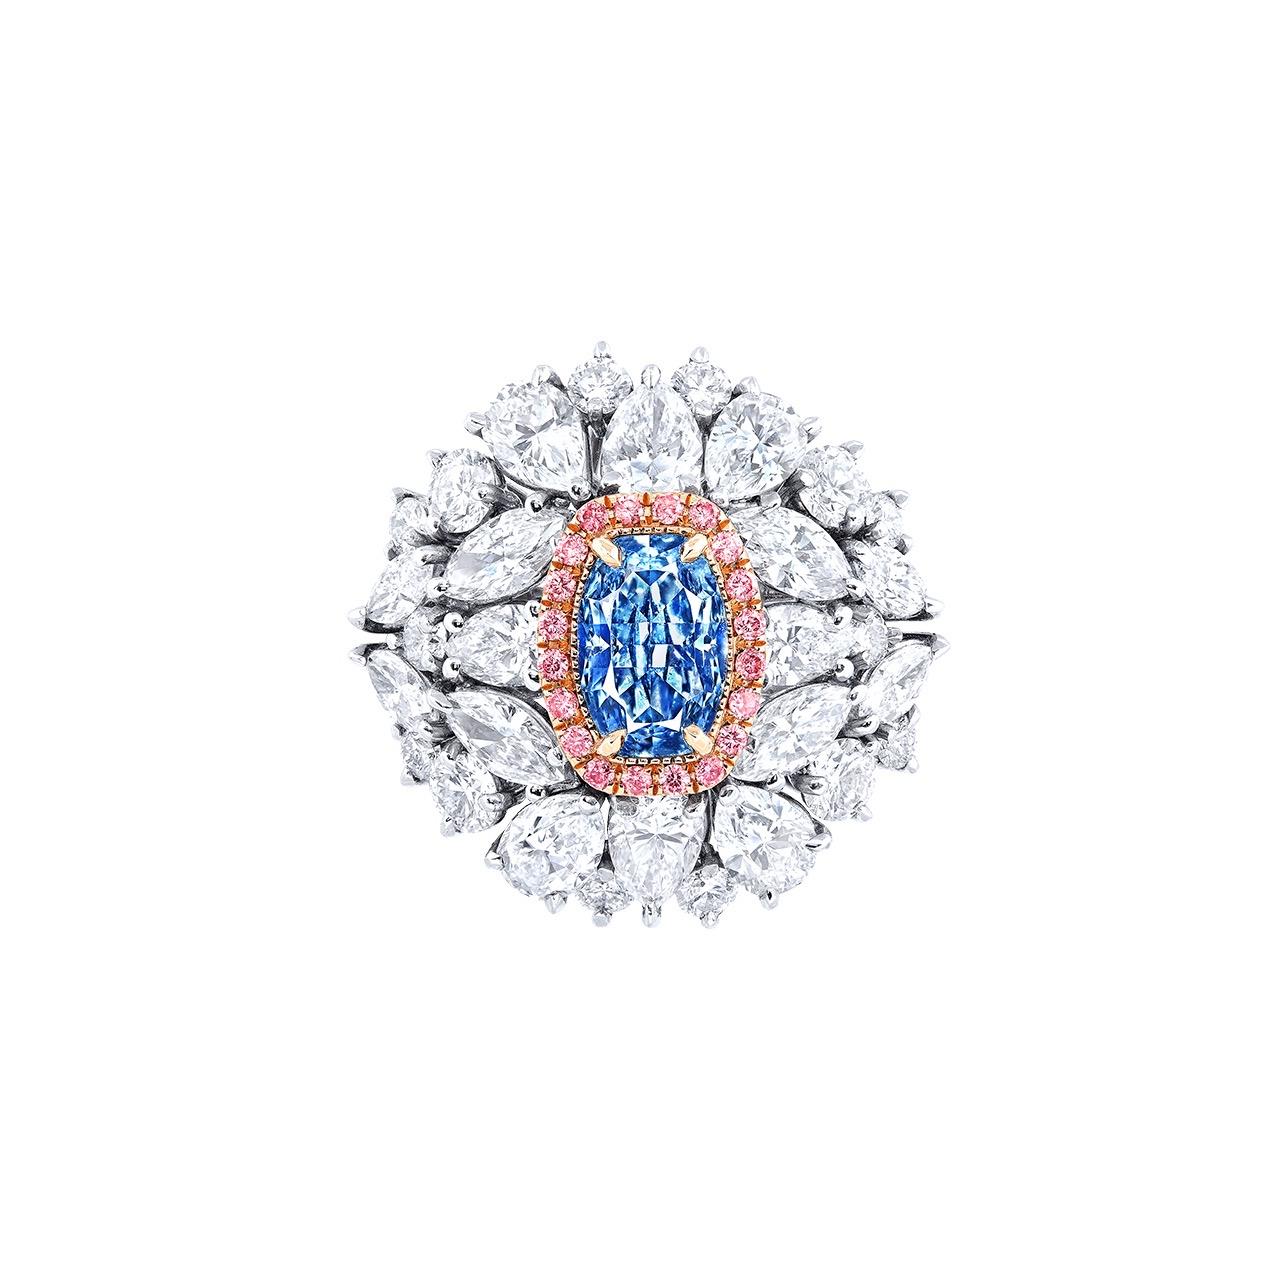 Aus dem Museumstresor von Emilio Jewelry in der berühmten New Yorker Fifth Avenue,
Center Stein: 1,20 Karat + Gia zertifiziert natürlichen Fancy Intense pure Blue VS1 CUSHION
Passend dazu: Weiße Diamanten insgesamt etwa 4,30 Karat, rosa Diamanten